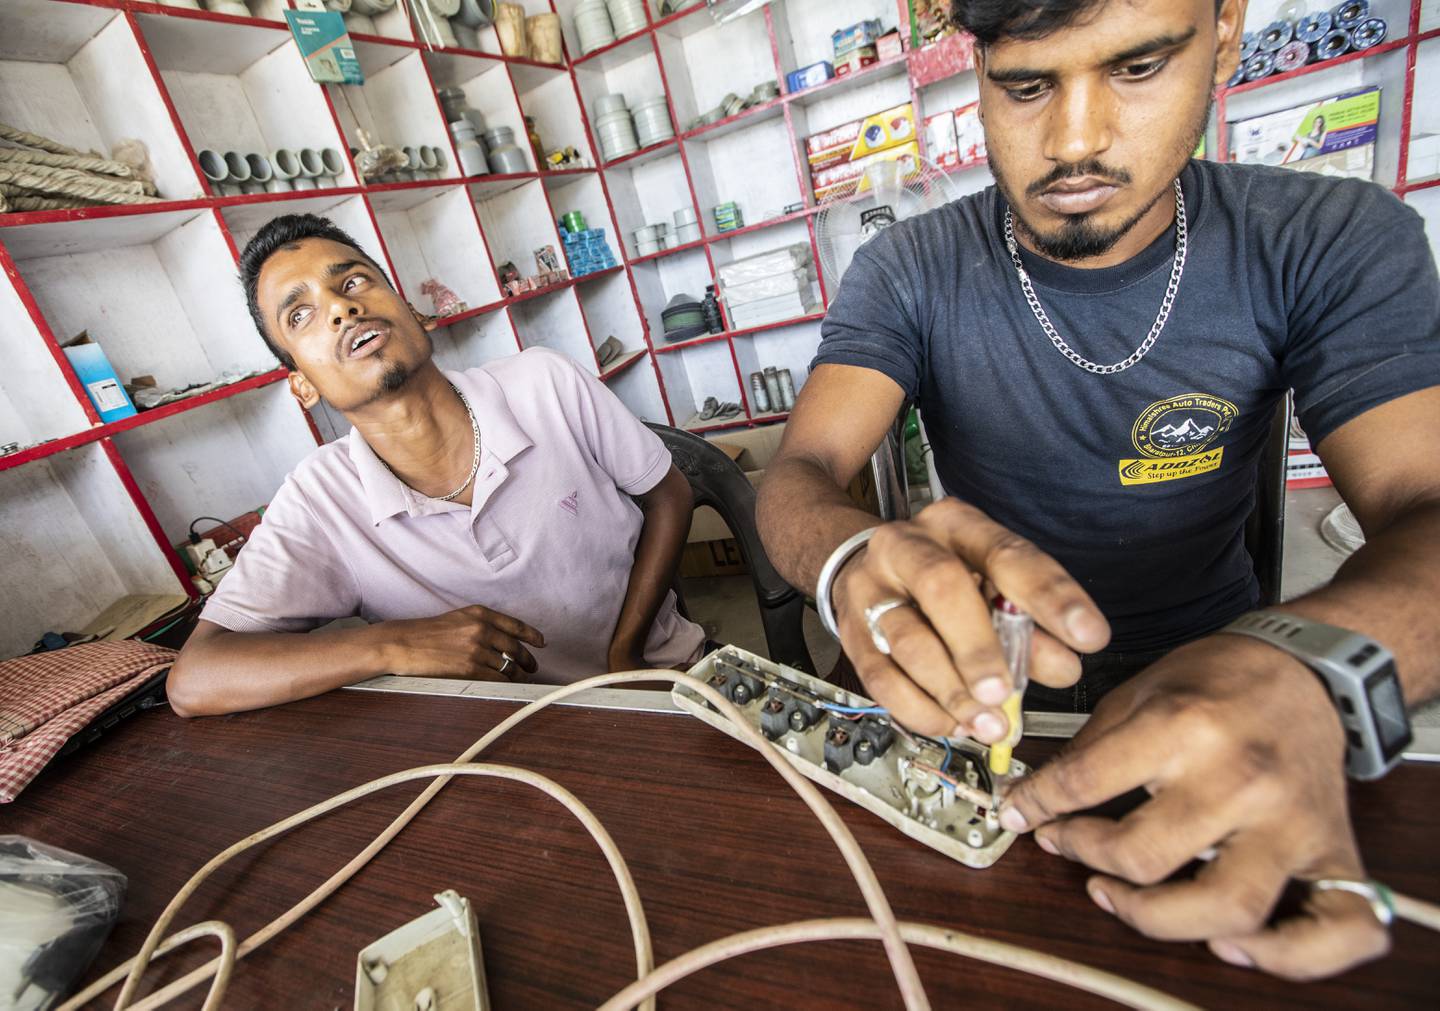 Gjestearbeidere i Nepal dør av hete mens de bygger arenaer til fotball-VM i Qatar.